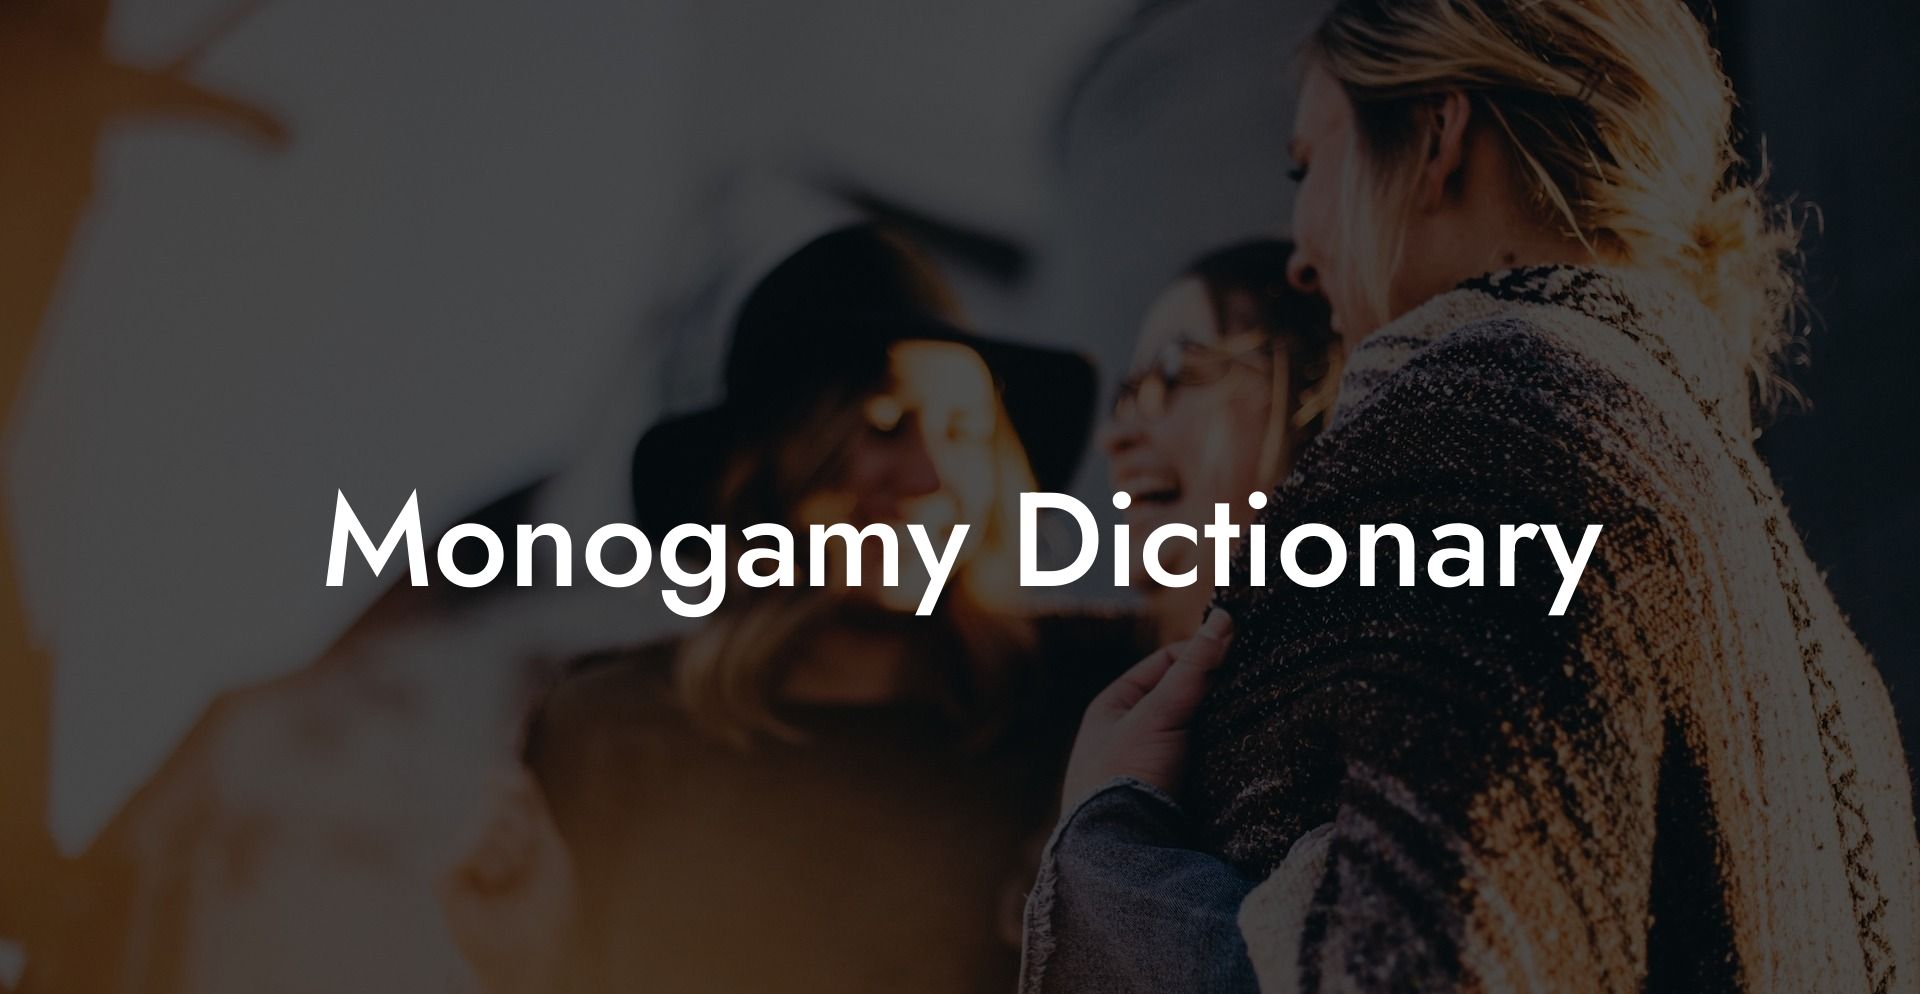 Monogamy Dictionary